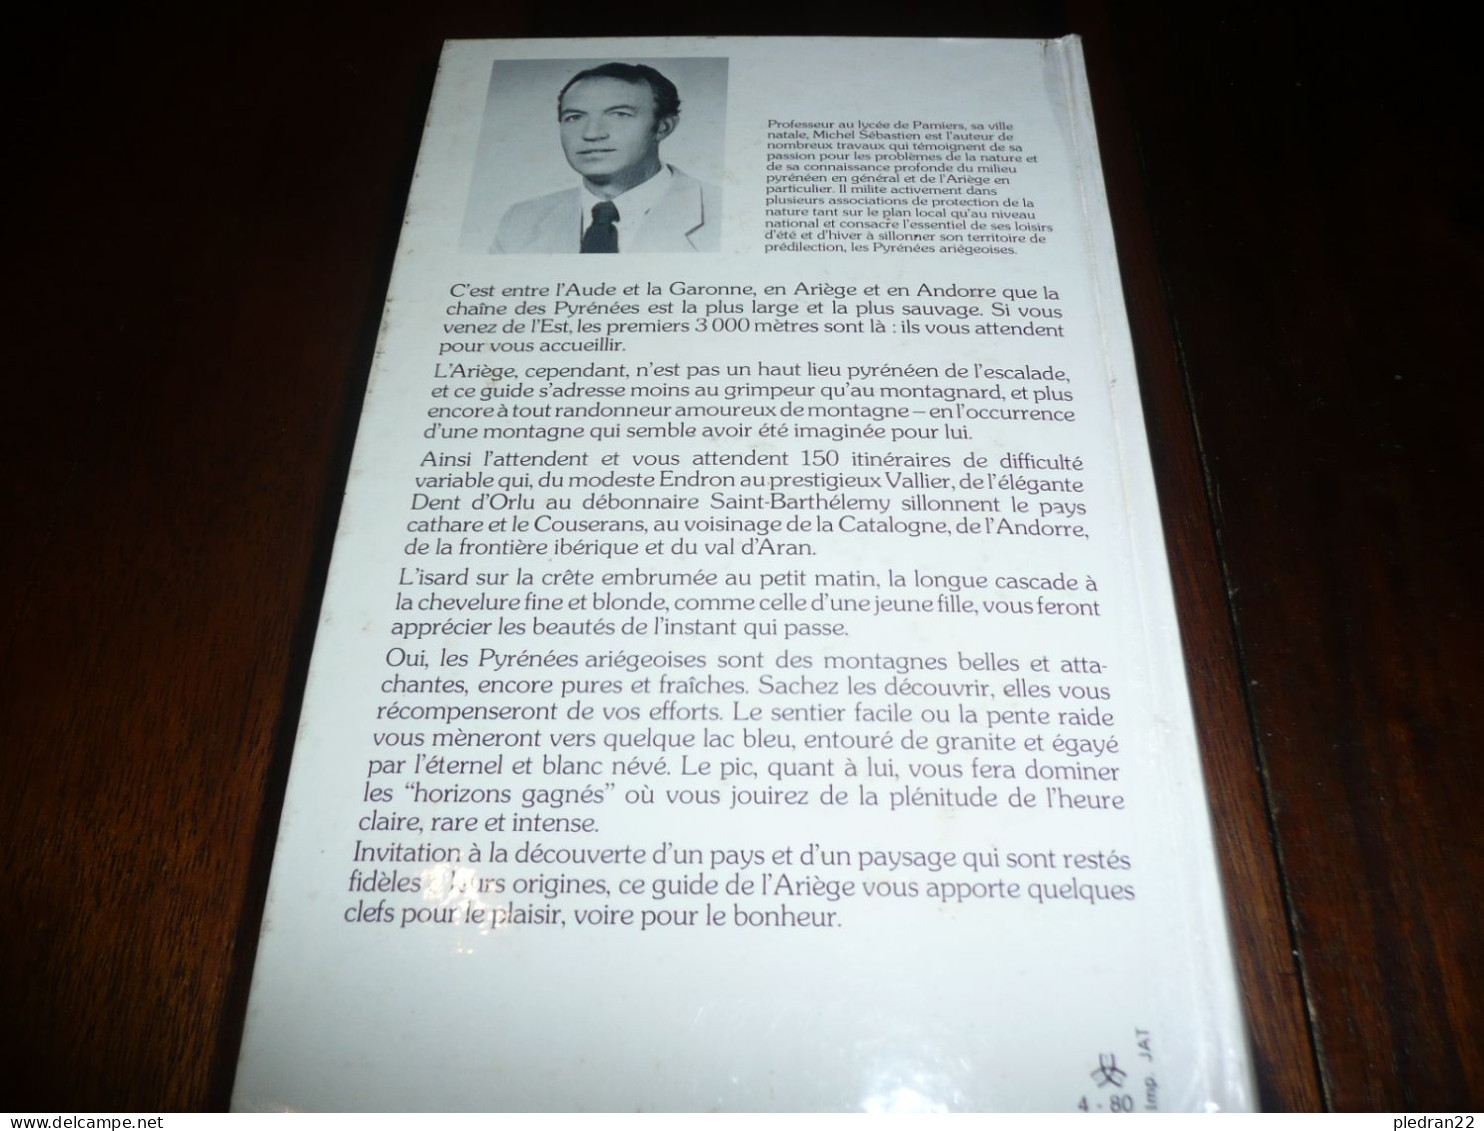 REGIONALISME MICHEL SEBASTIEN RANDONNEES DANS LES PYRENEES ARIEGEOISES ARIEGE DE L'AUDE A LA GARONNE 1980 - Midi-Pyrénées